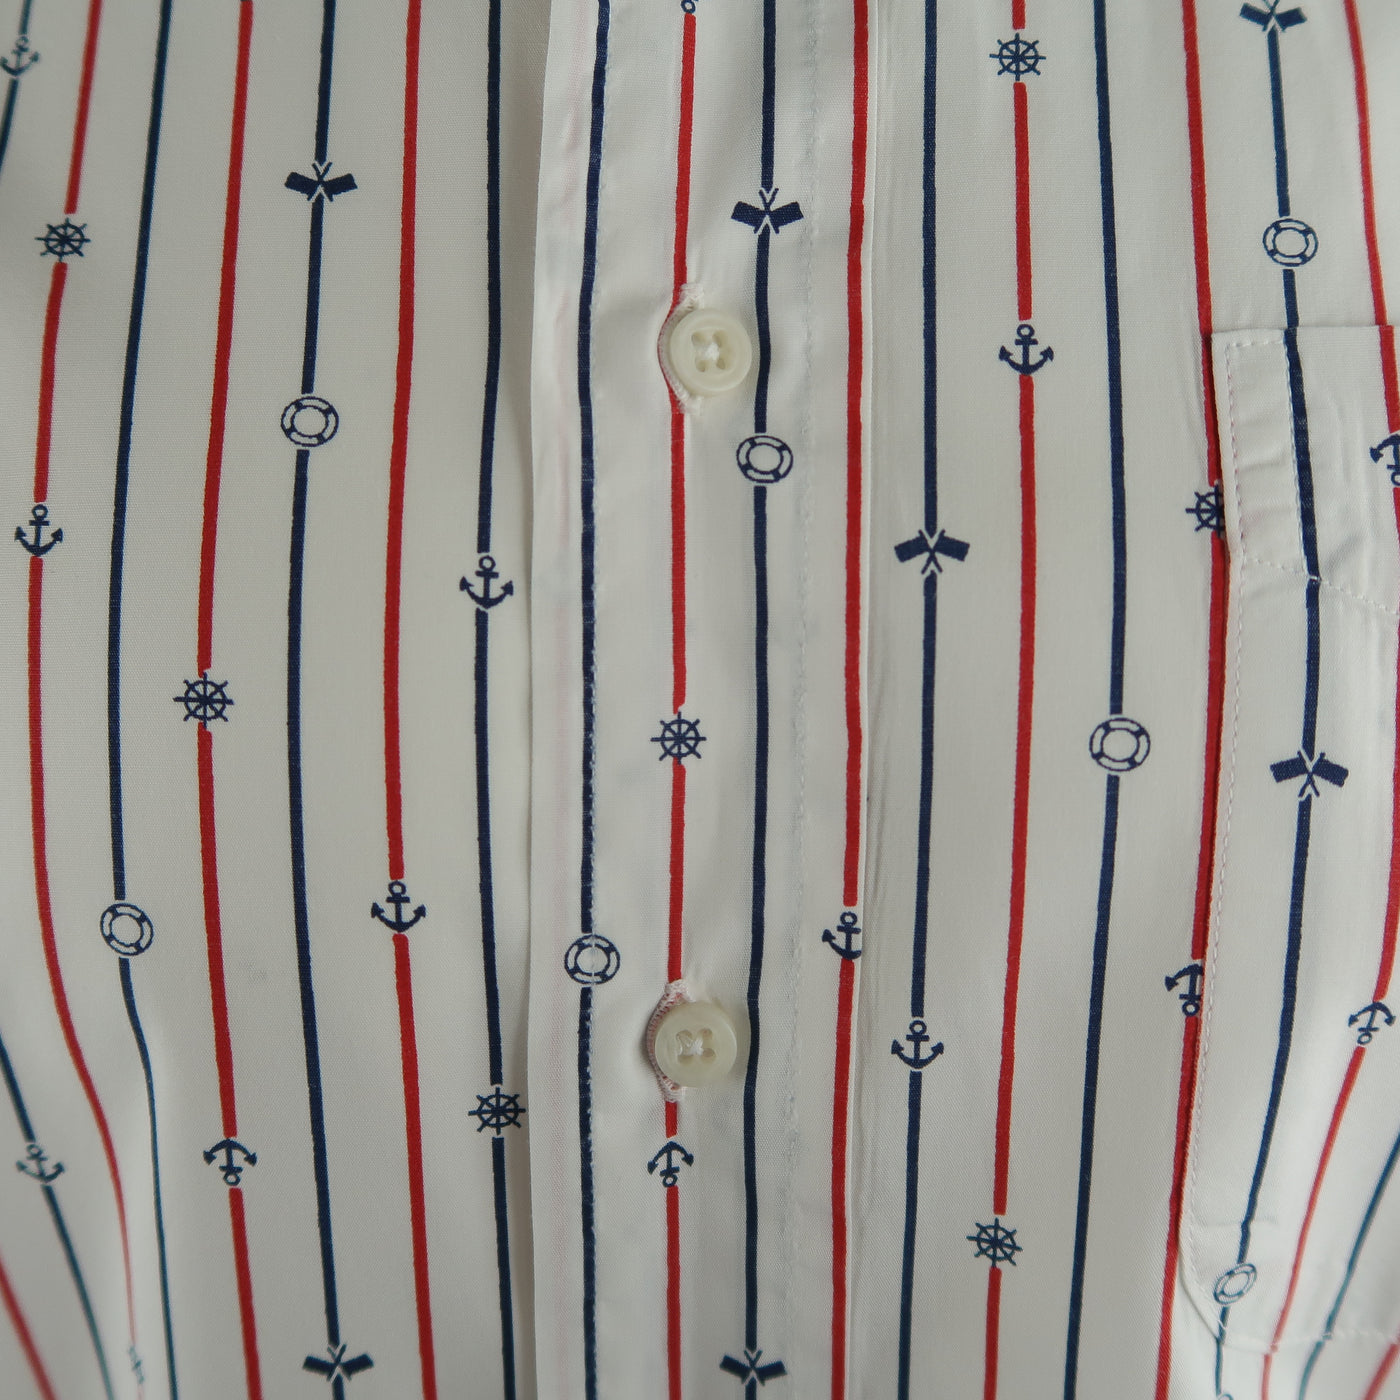 GITMAN VINTAGE Size L White Stripe Cotton Button Down Long Sleeve Shirt